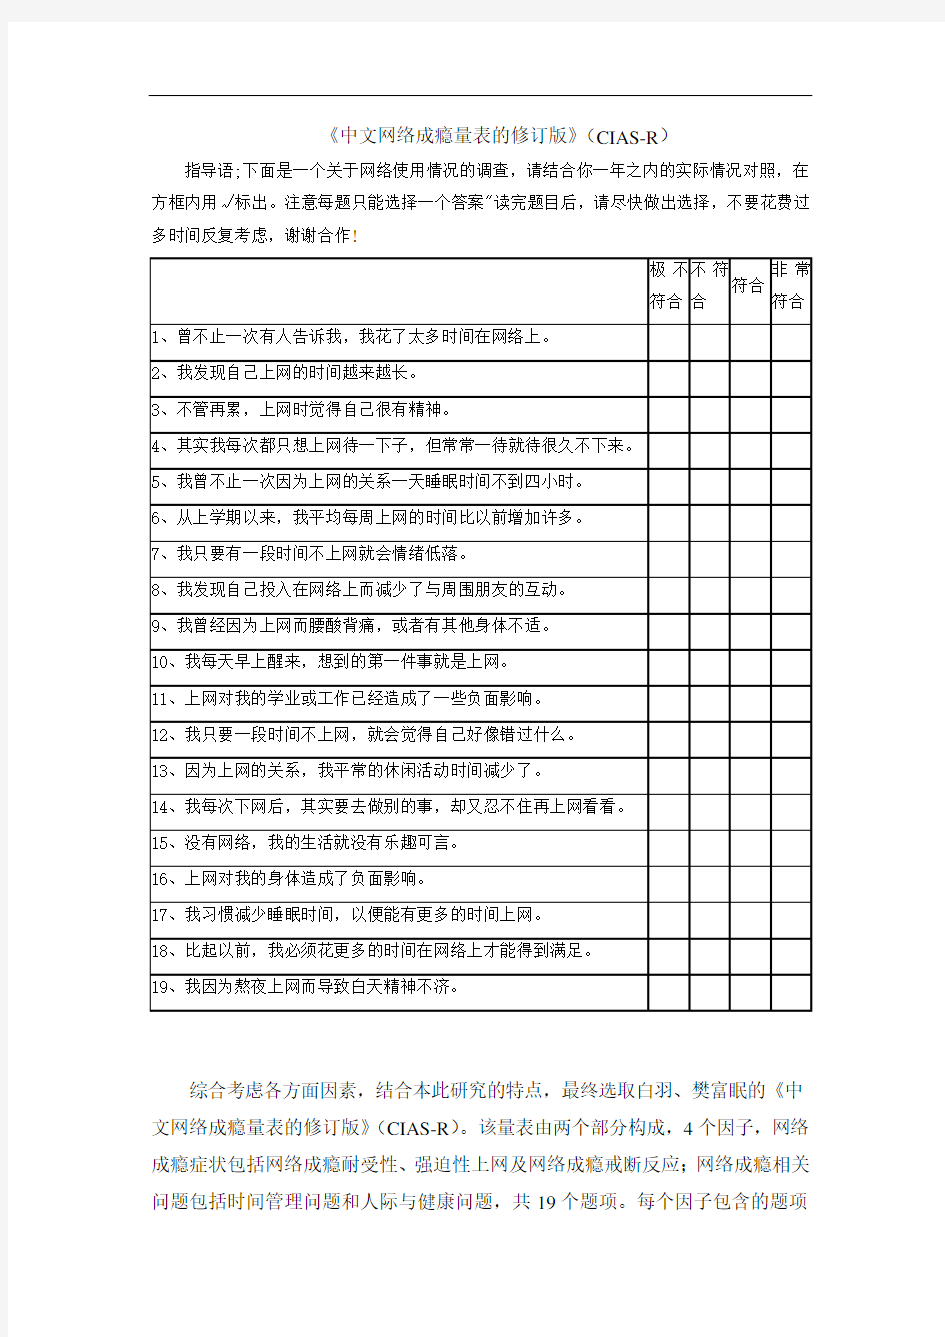 中文网络成瘾量表的修订版(CIAS-R)